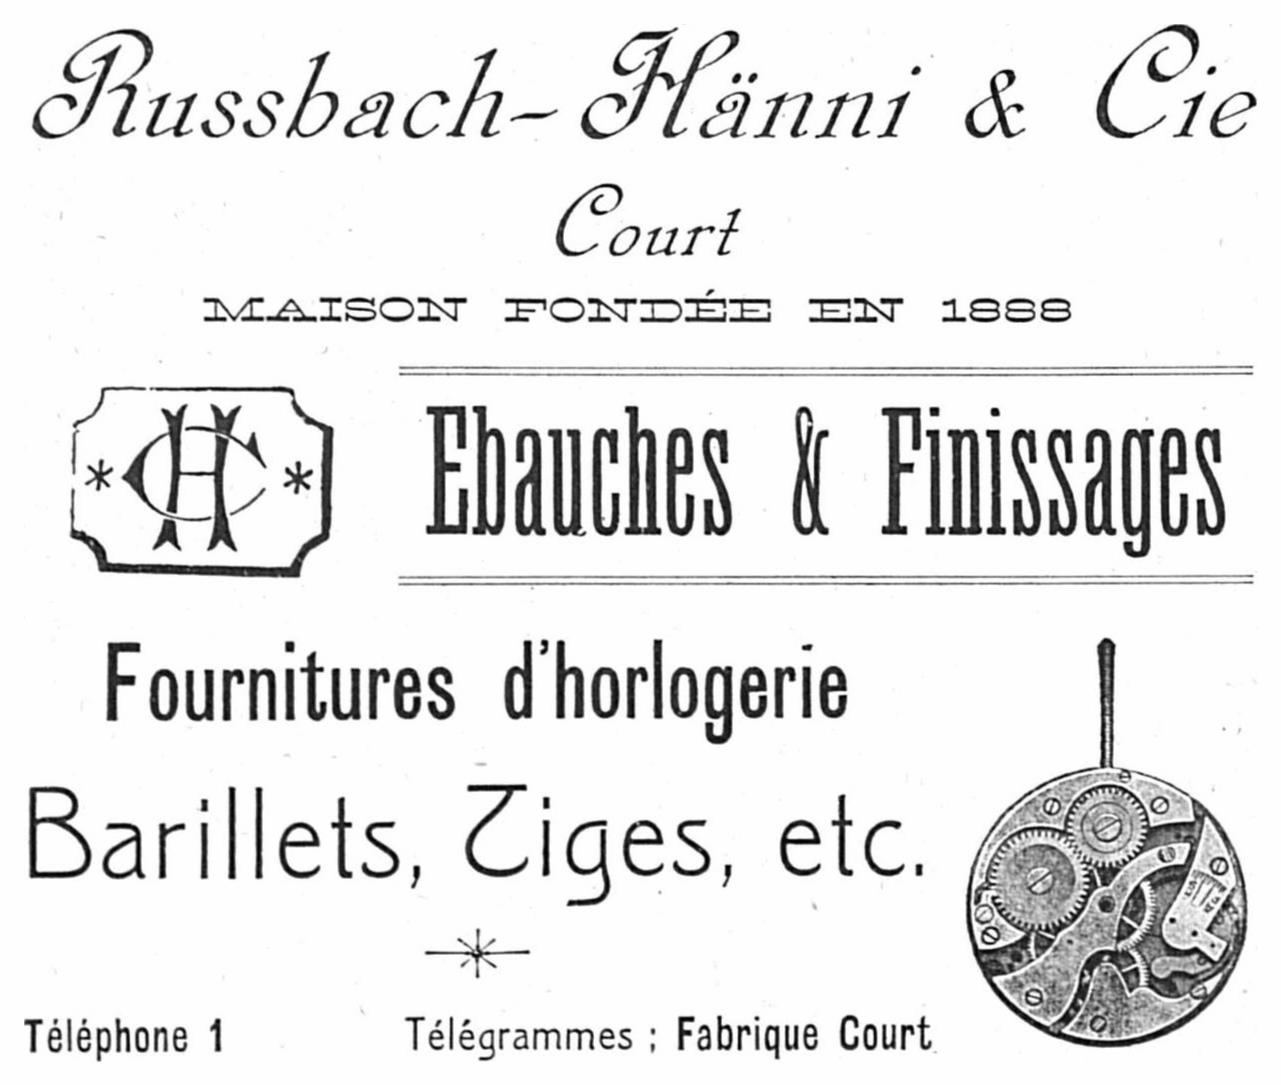 Ebauche & Finissages 1920 32.jpg